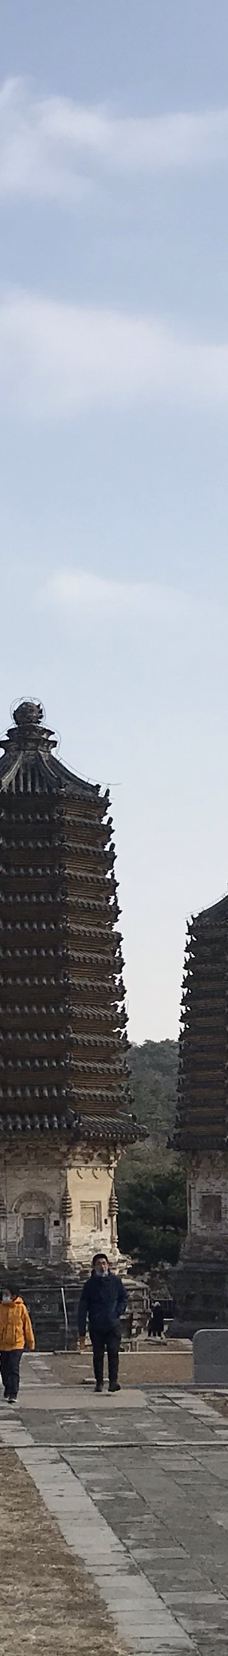 银山塔林-北京